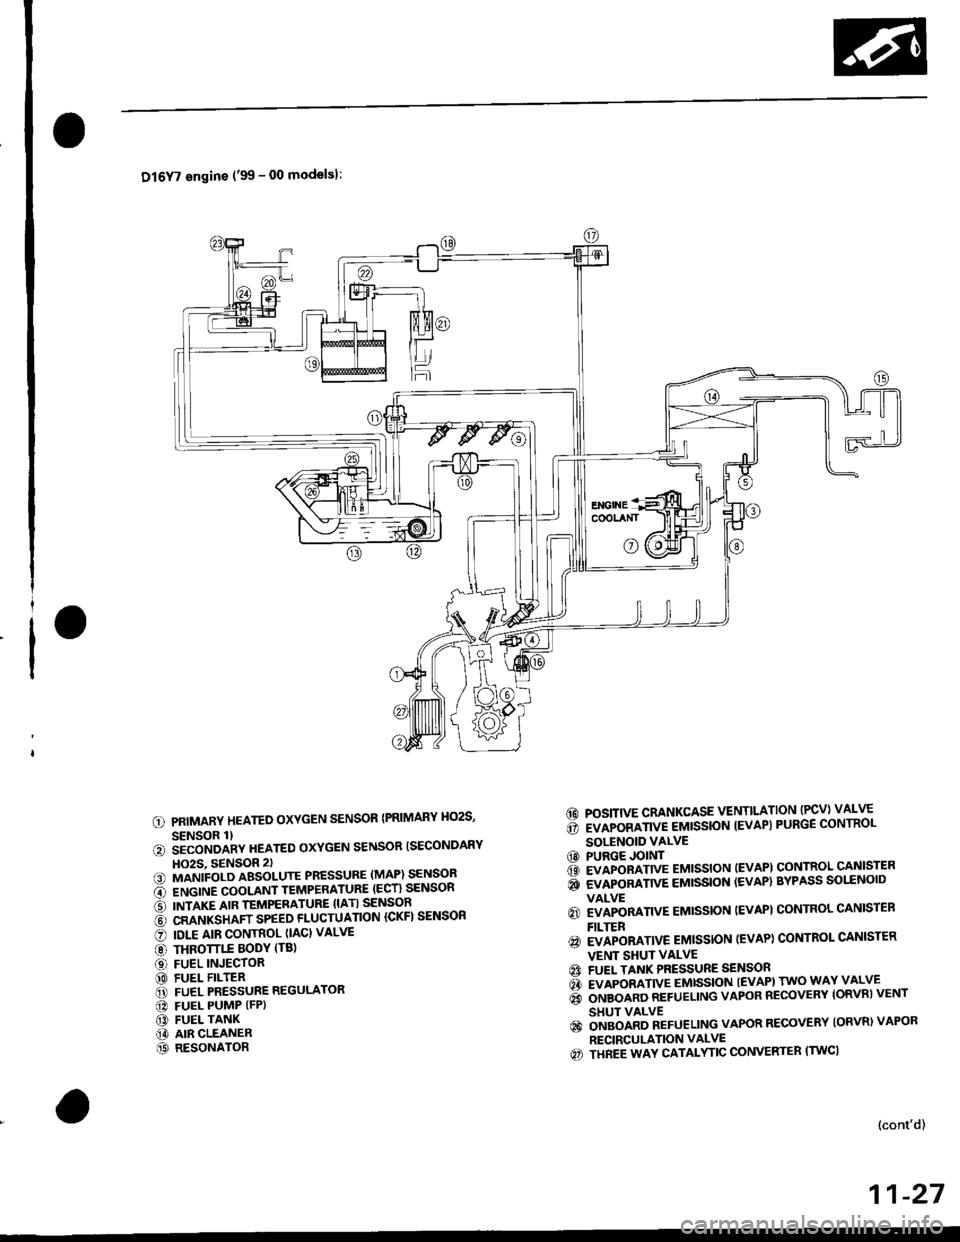 HONDA CIVIC 1999 6.G Workshop Manual Dl6Y7 engins (99 - 00 modelsl:
PRIMARY HEATED OXYGEN SENSOR {PRIMARY HO2S,
SENSOR 1)iiconoanv neareo oxYGEN sENsoR ISECoNDARY
HO2S, 9ENSOR 2)MANIFOLD ABSOLUTE PRESSURE (MAP) SENSOR
ENGINE COOLANT TEM